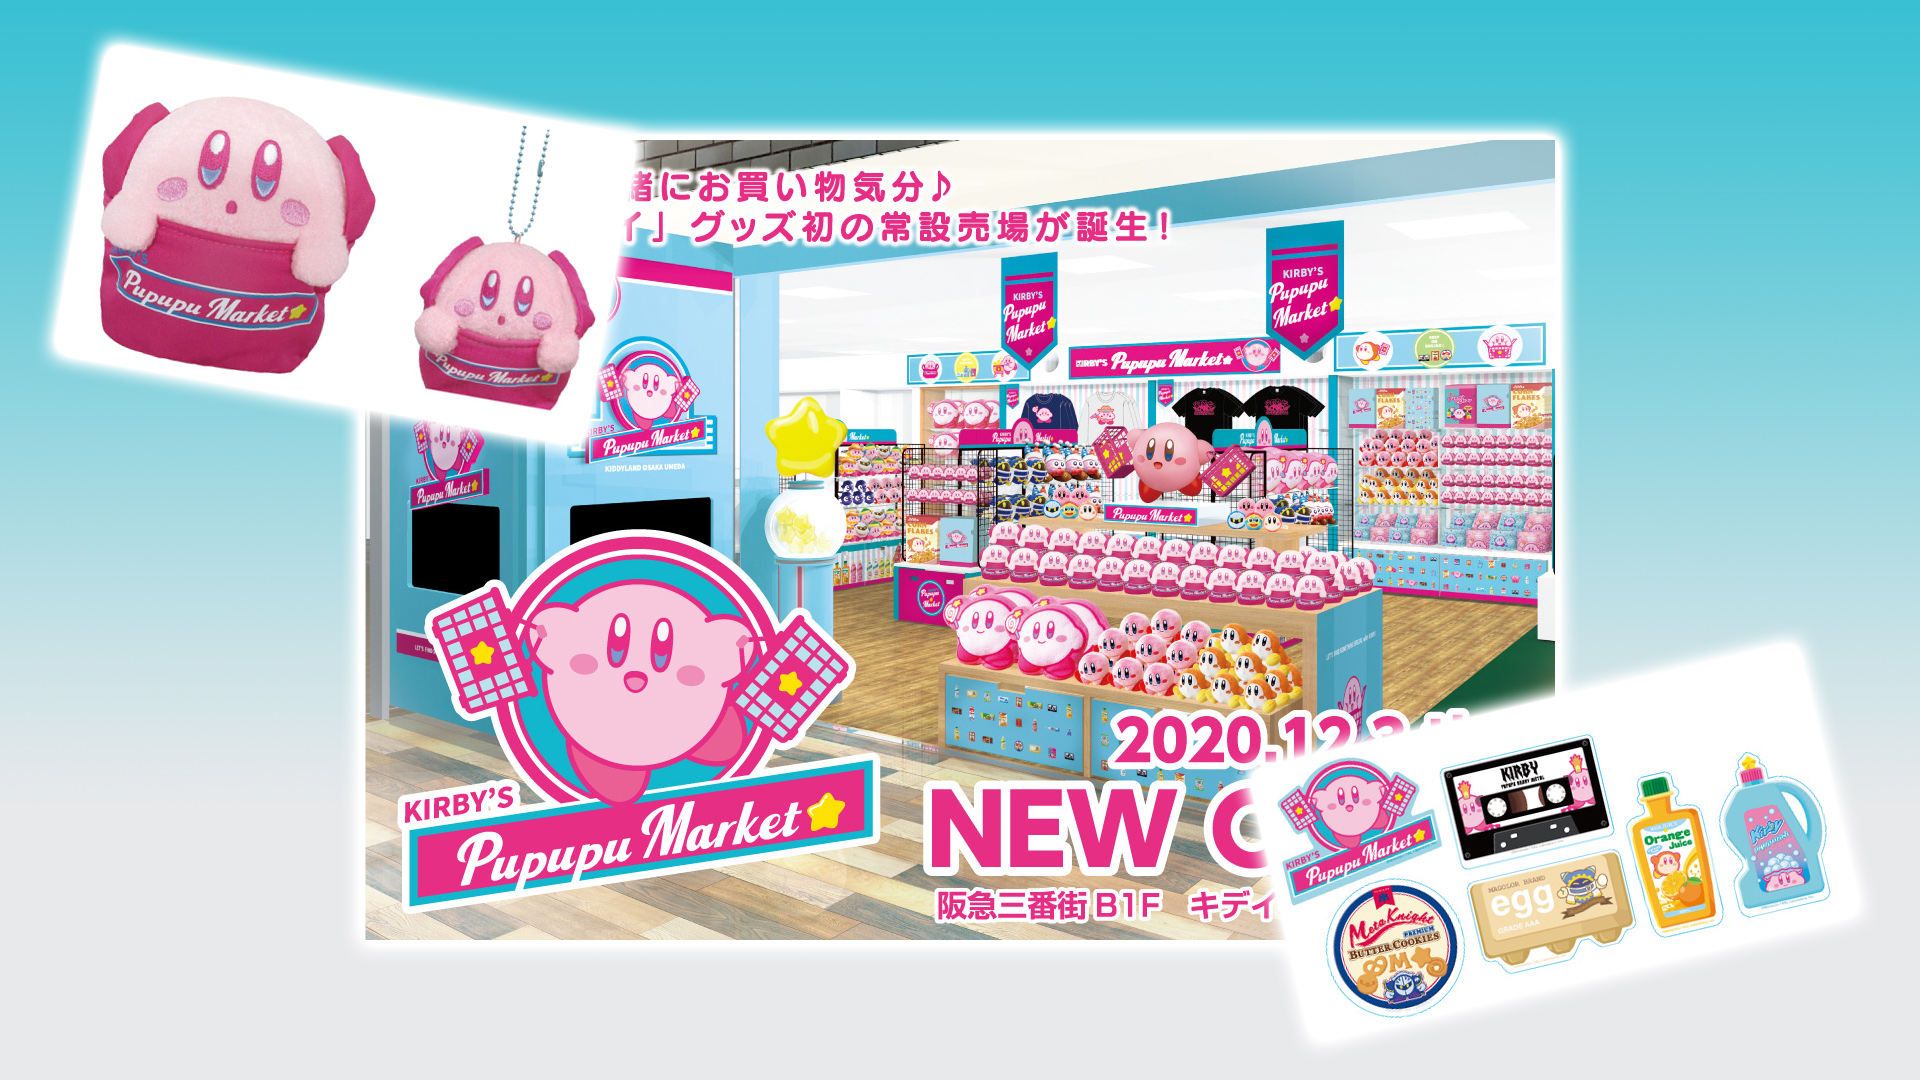 https://nintendowire.com/wp-content/uploads/2020/11/Banner-KirbysPupupuMarket.jpg